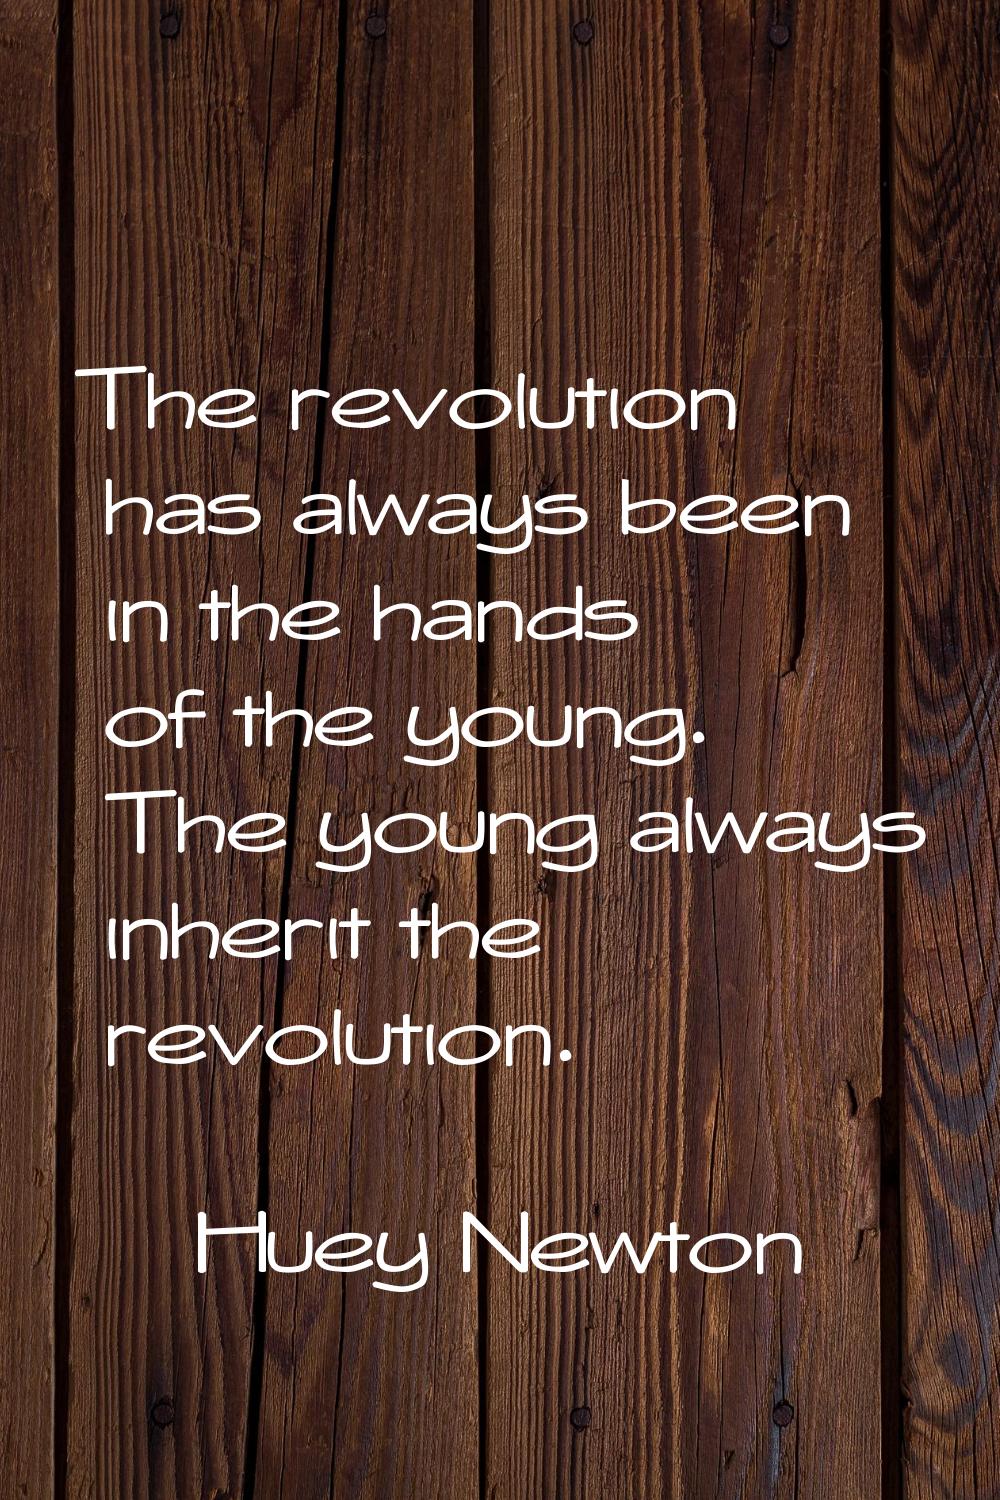 The revolution has always been in the hands of the young. The young always inherit the revolution.